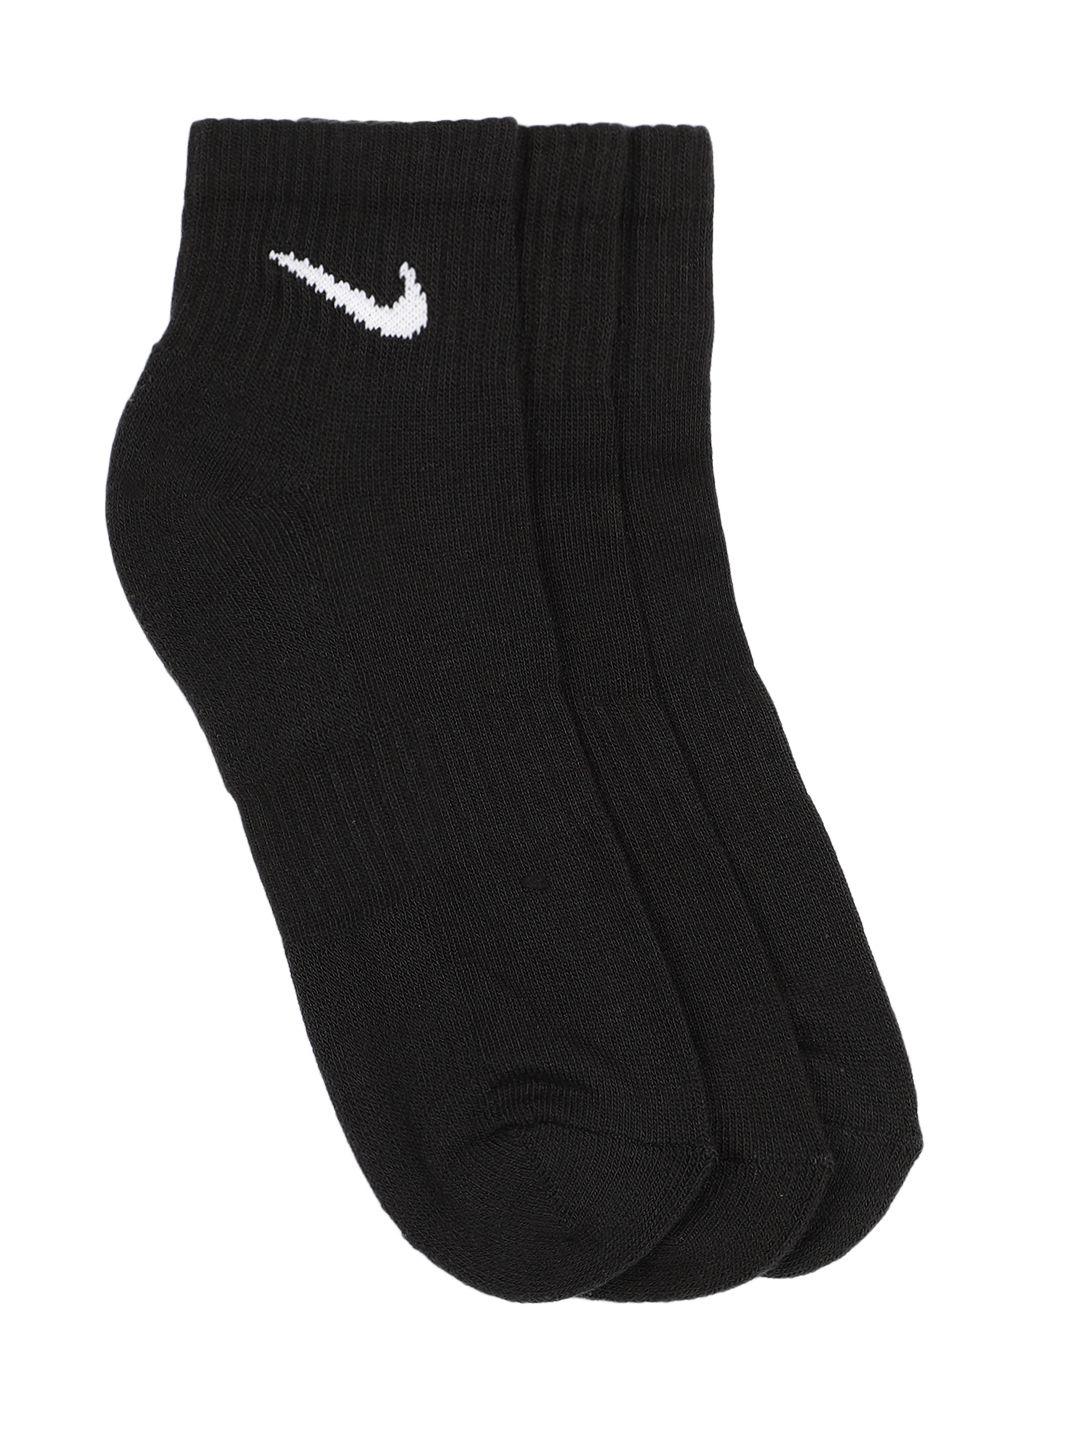 nike men pack of 3 black everyday cushion ankle length socks